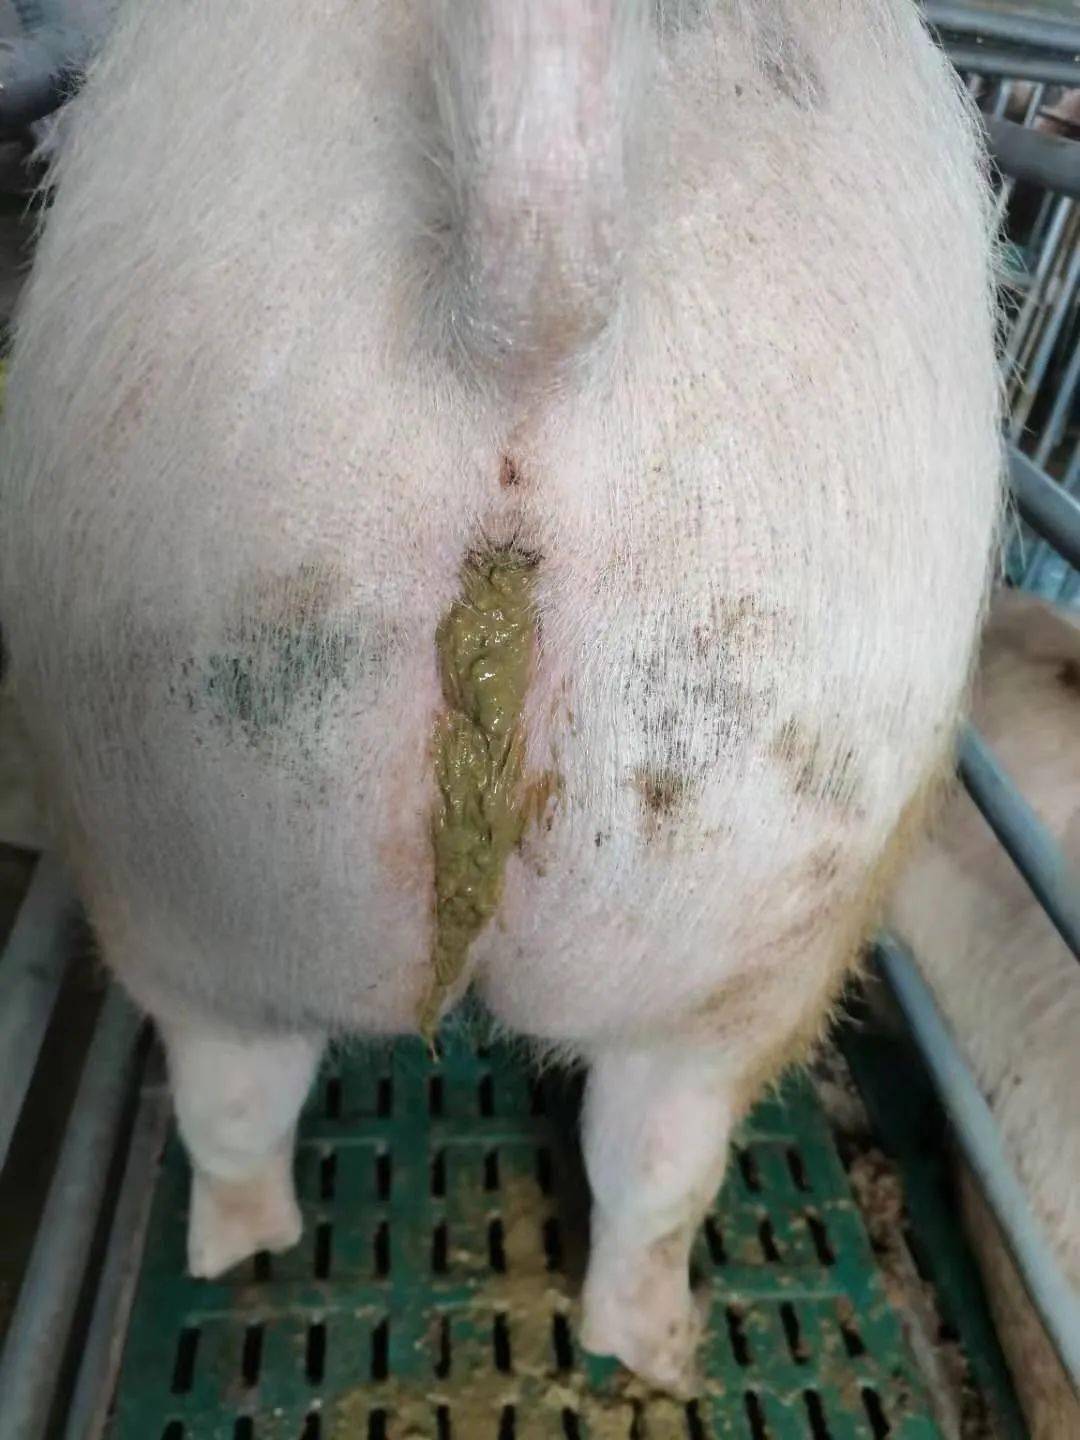 猪回肠炎最明显症状图片